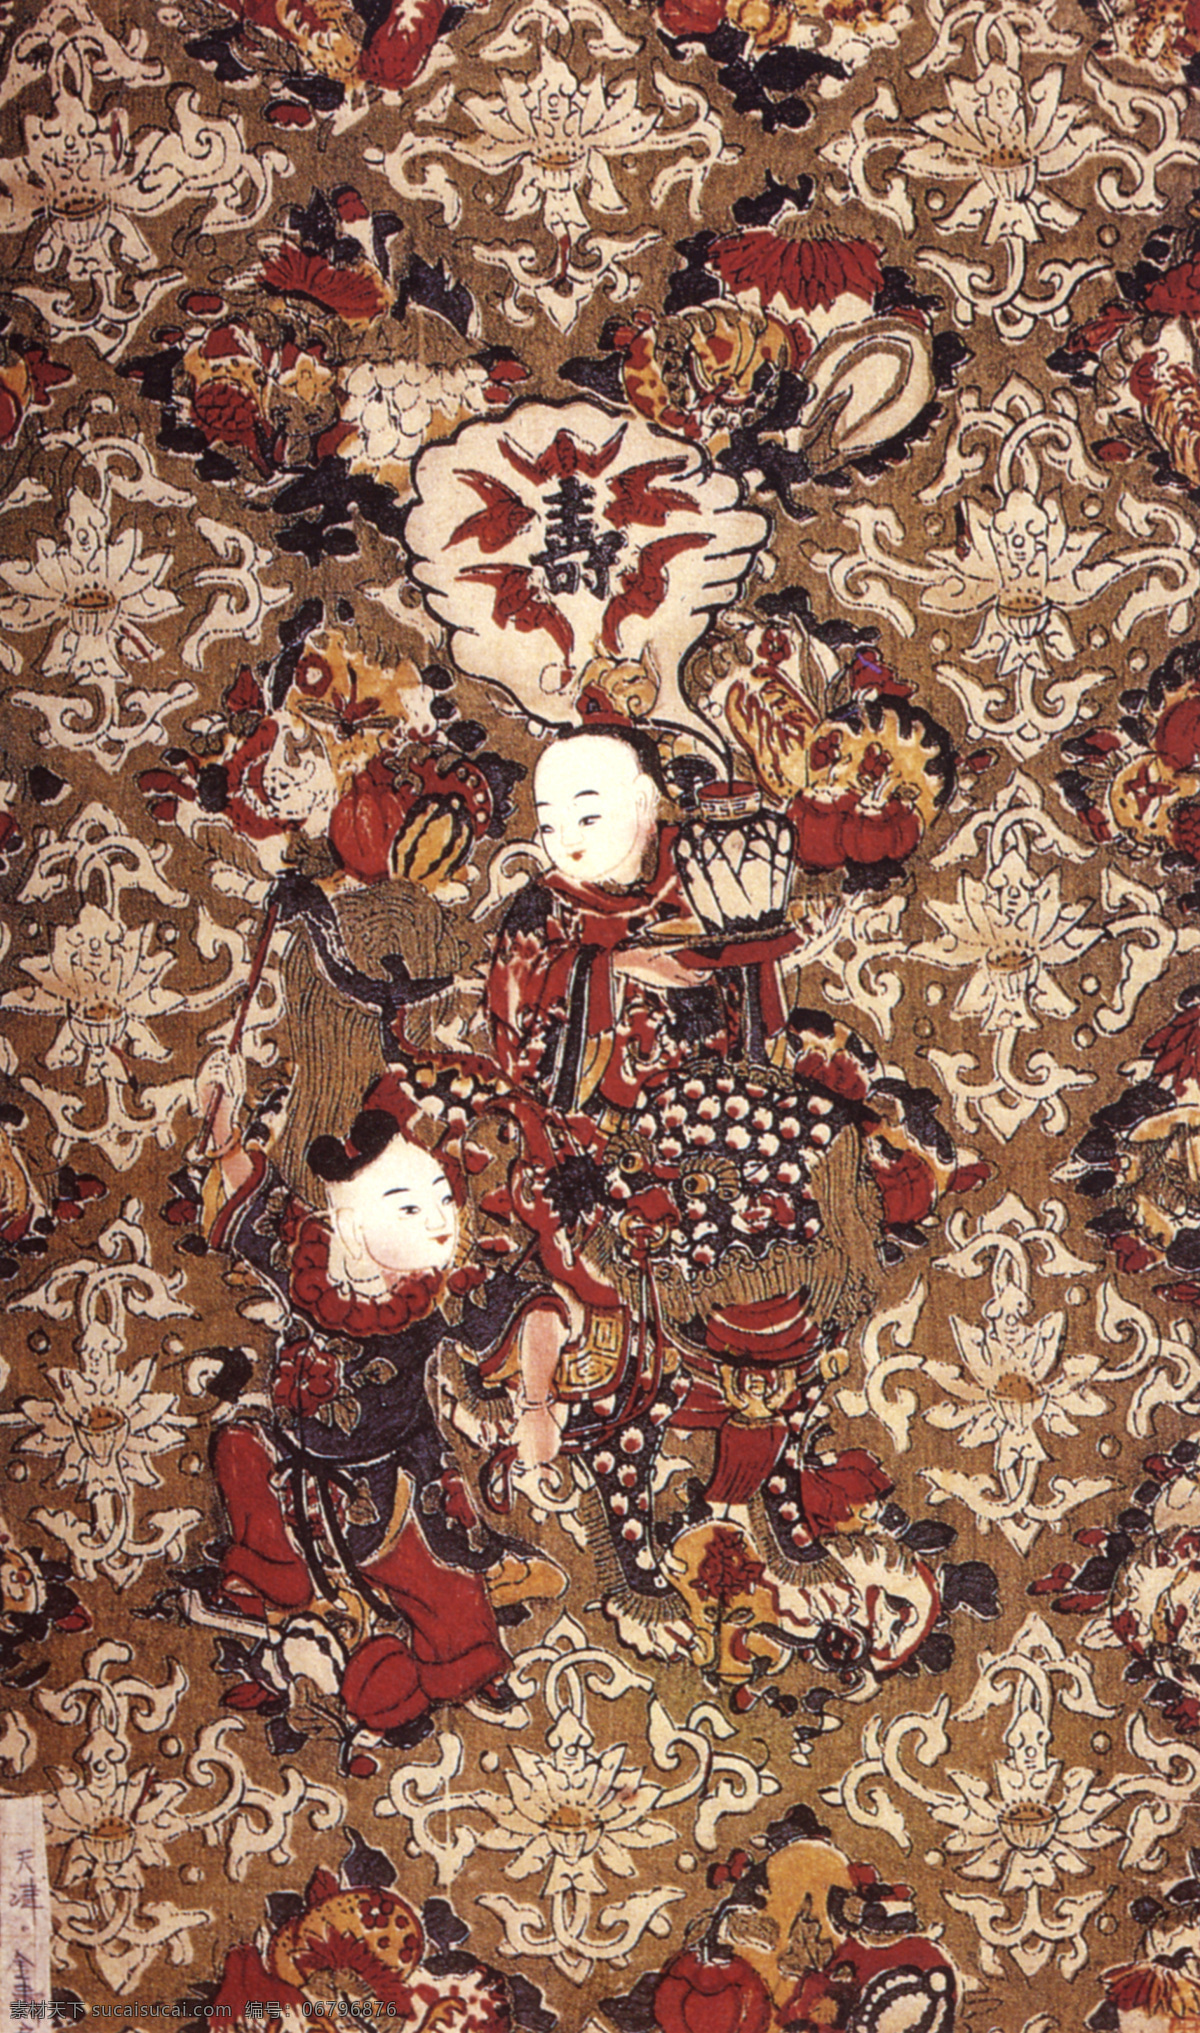 金寿童子 童子 寿字 年画 传统 中国风 中国设计 吉祥图案 吉祥富贵 传统故事 彩绘 文化艺术 传统彩绘艺术 绘画艺术 古典图案 传统文化 神话 传说 经典图案 系列 绘画书法